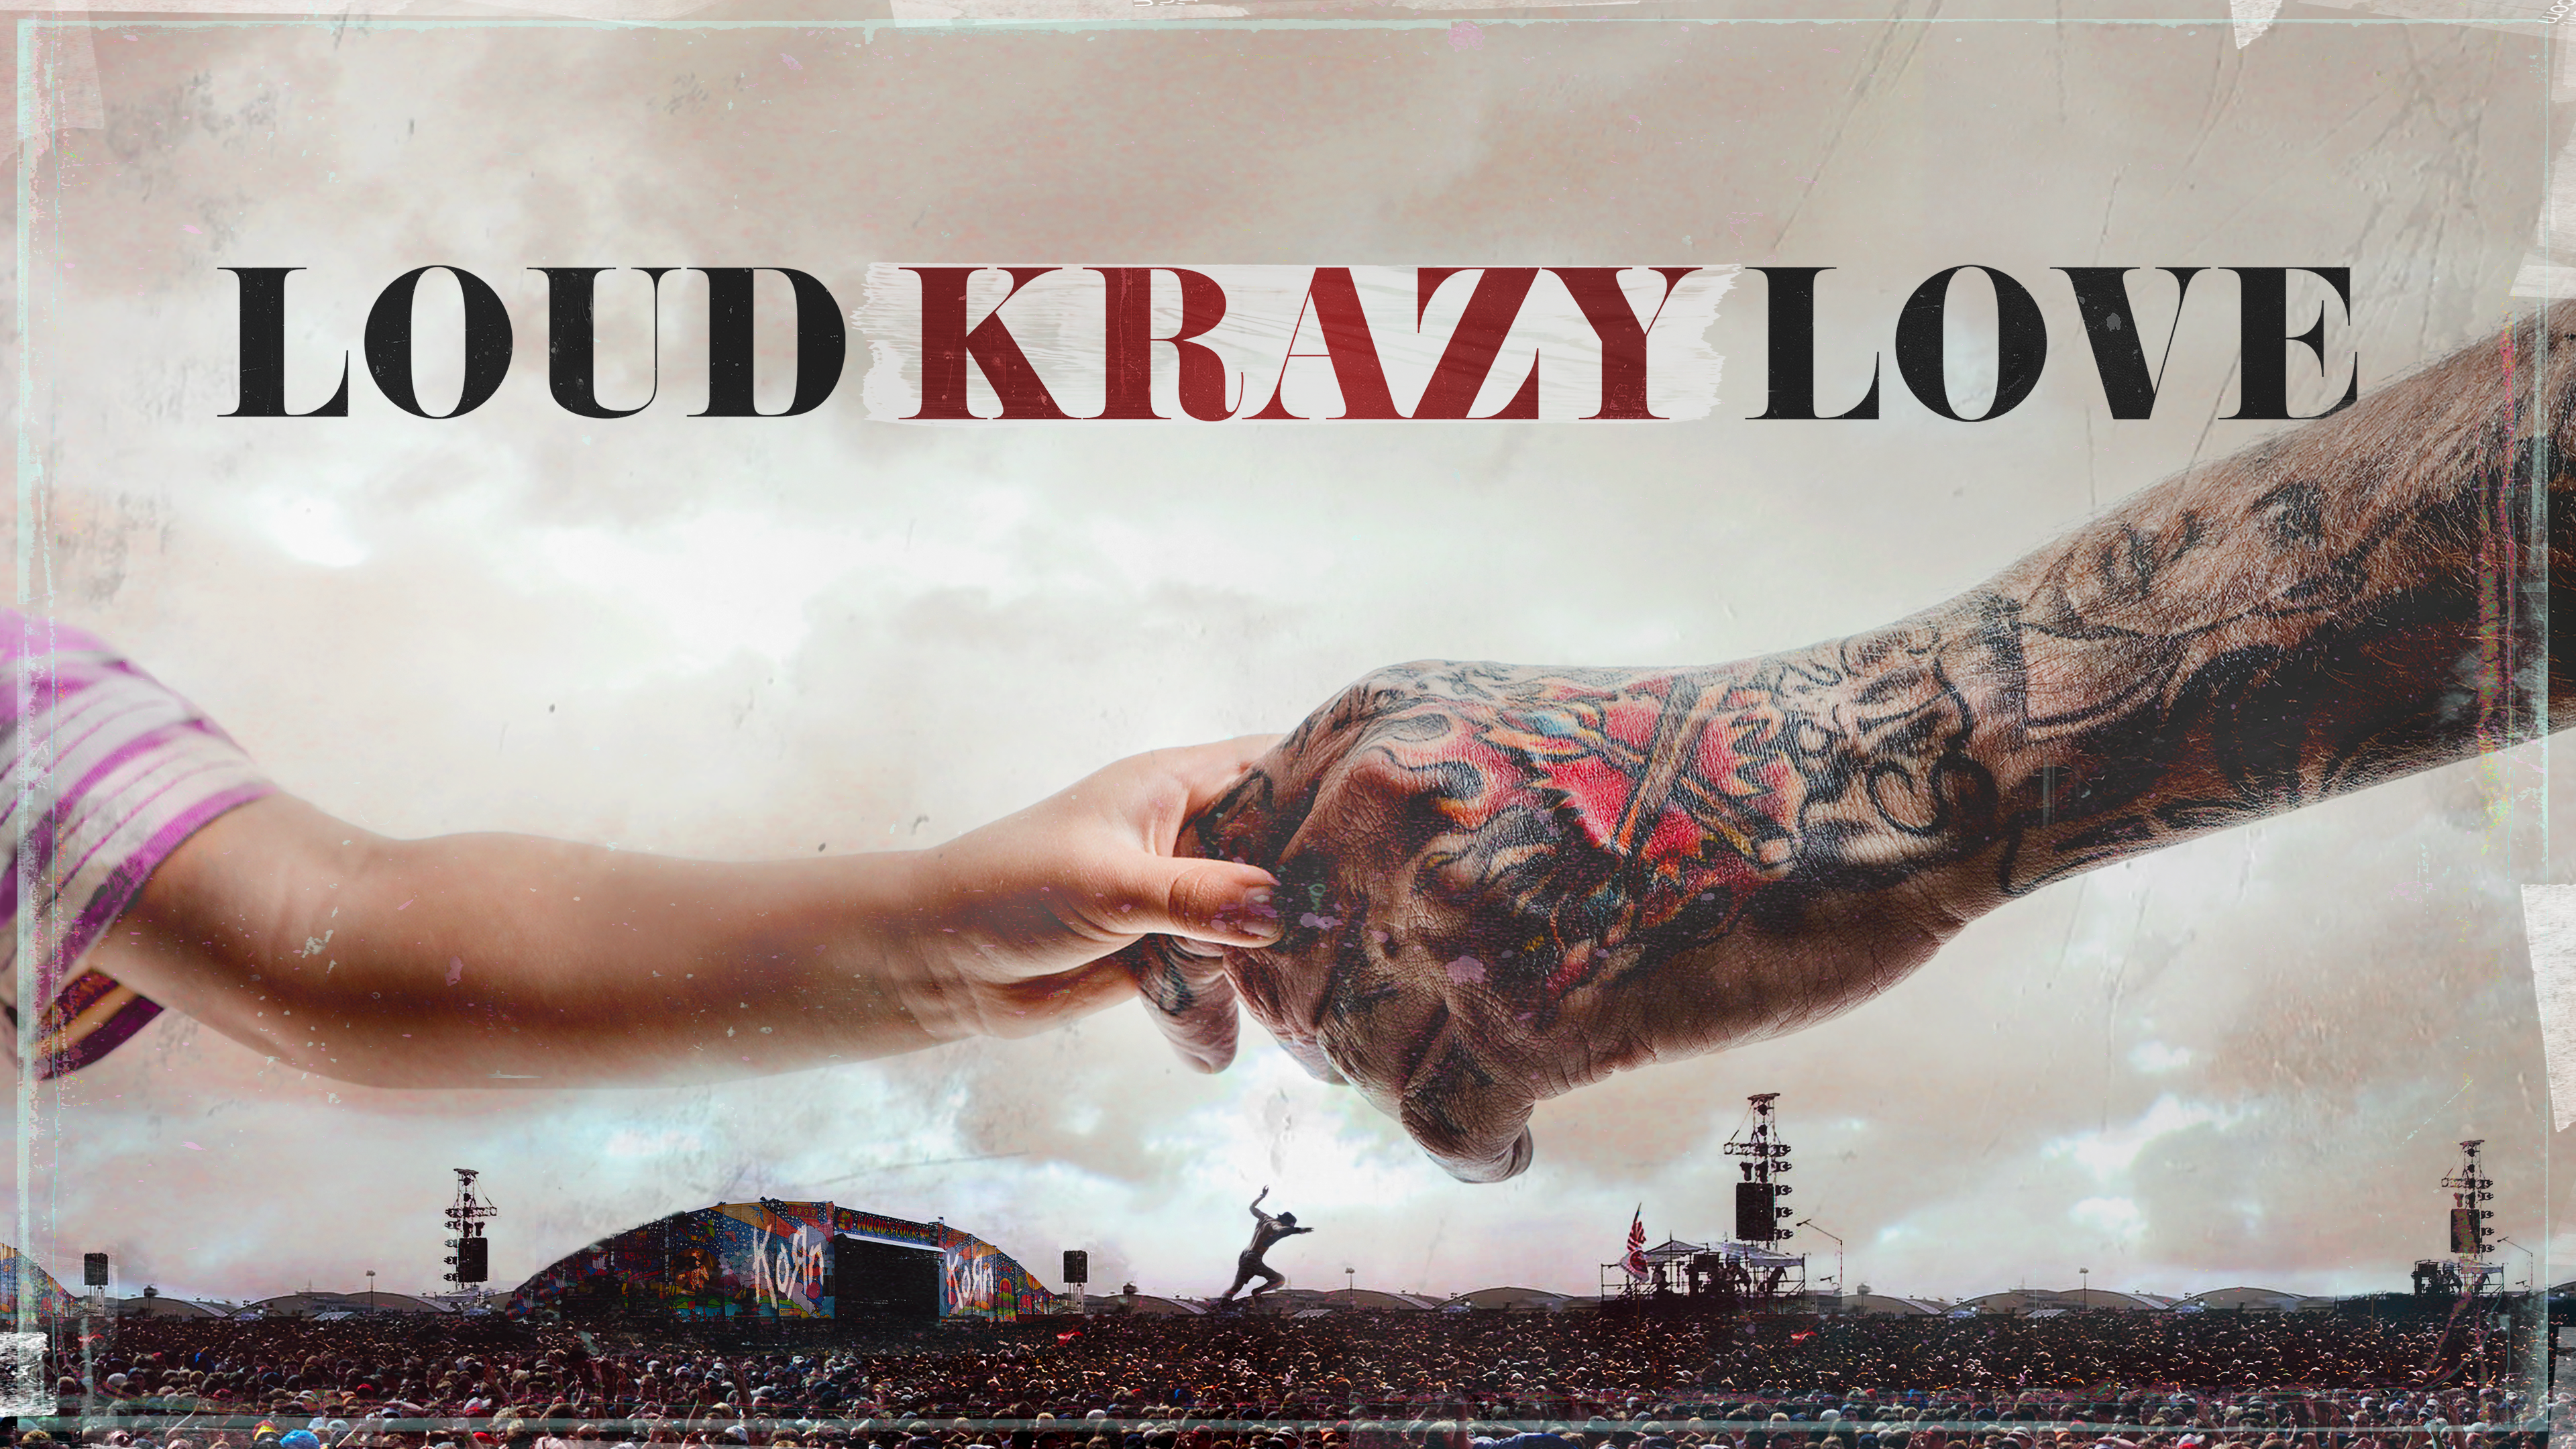 Loud Krazy Love Poster 16x9 Horizontal Final